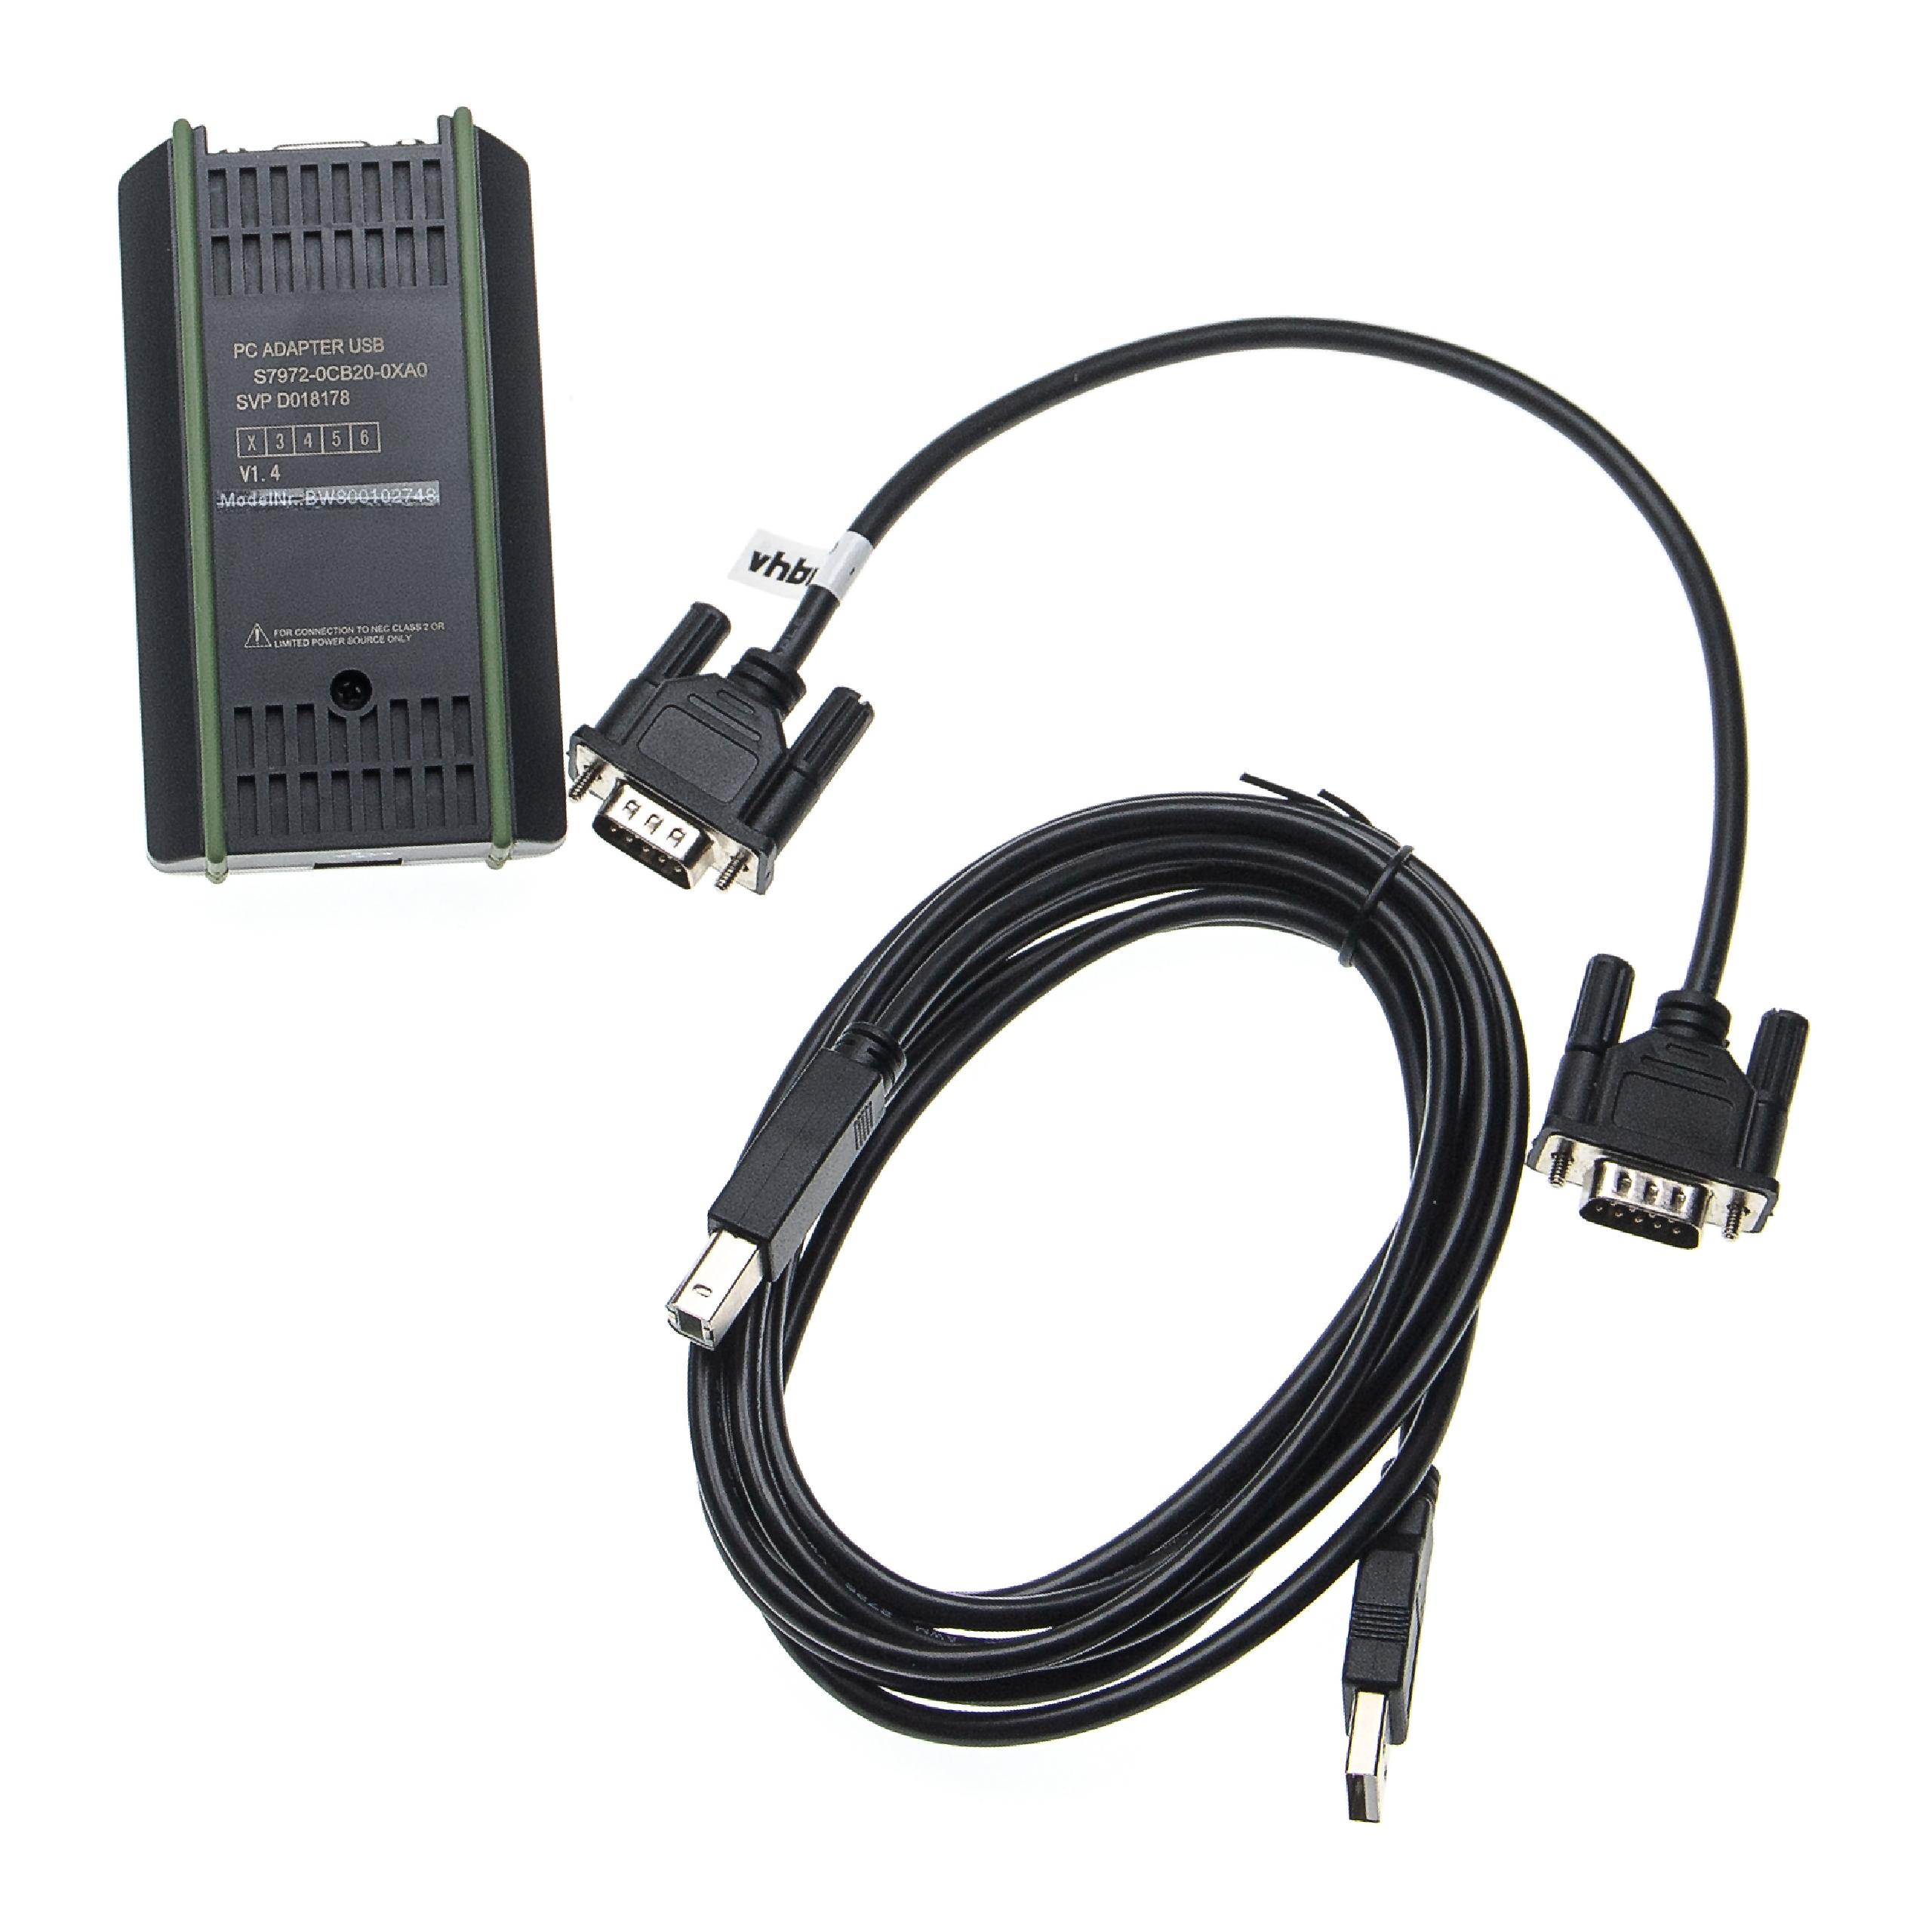 Cable de programación PLC, MPI reemplaza Siemens 6ES7 972-0CB20-0XA0 para radio